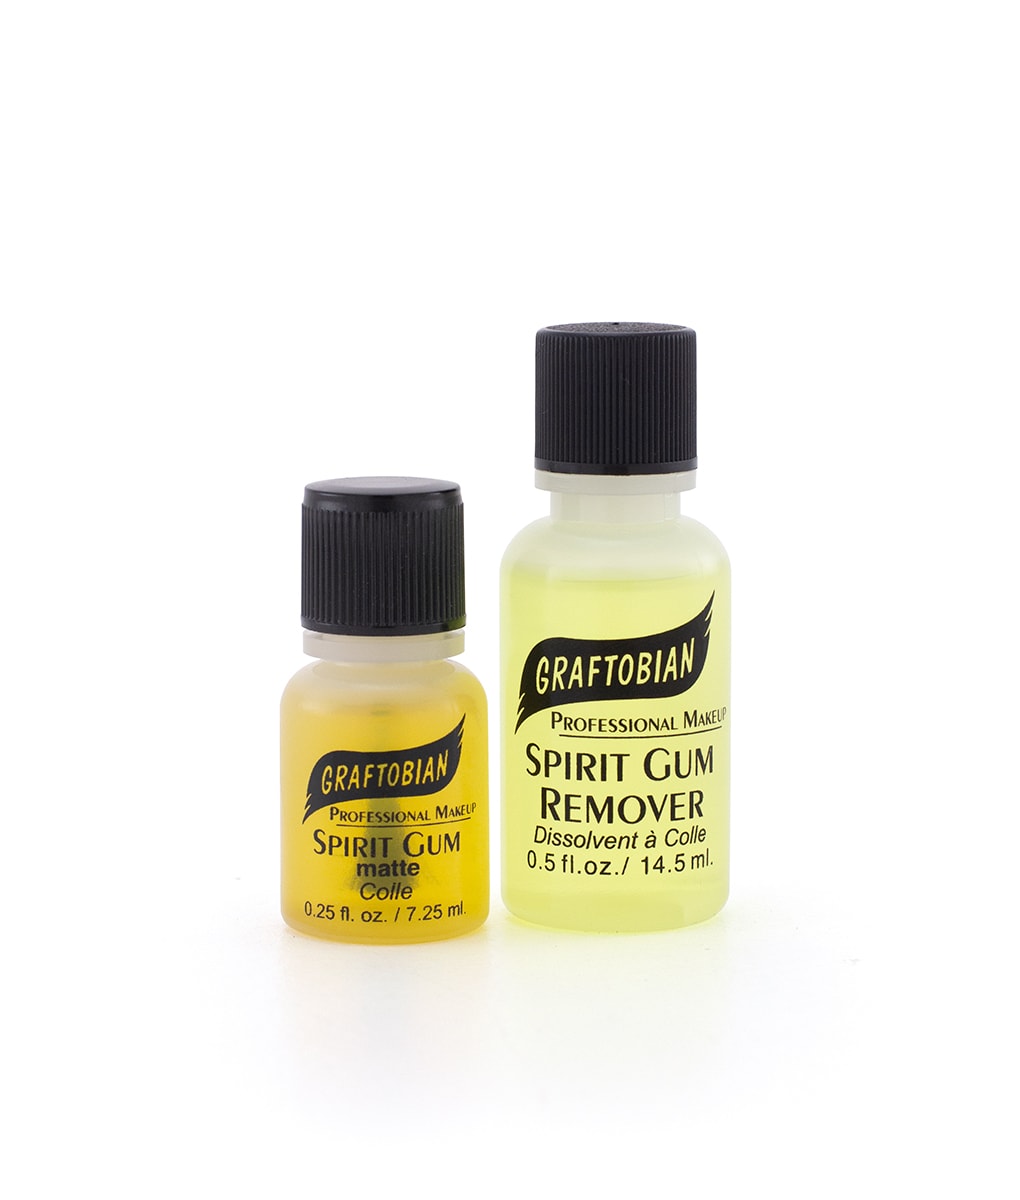 Spirit Gum Adhesive – SUVA Beauty